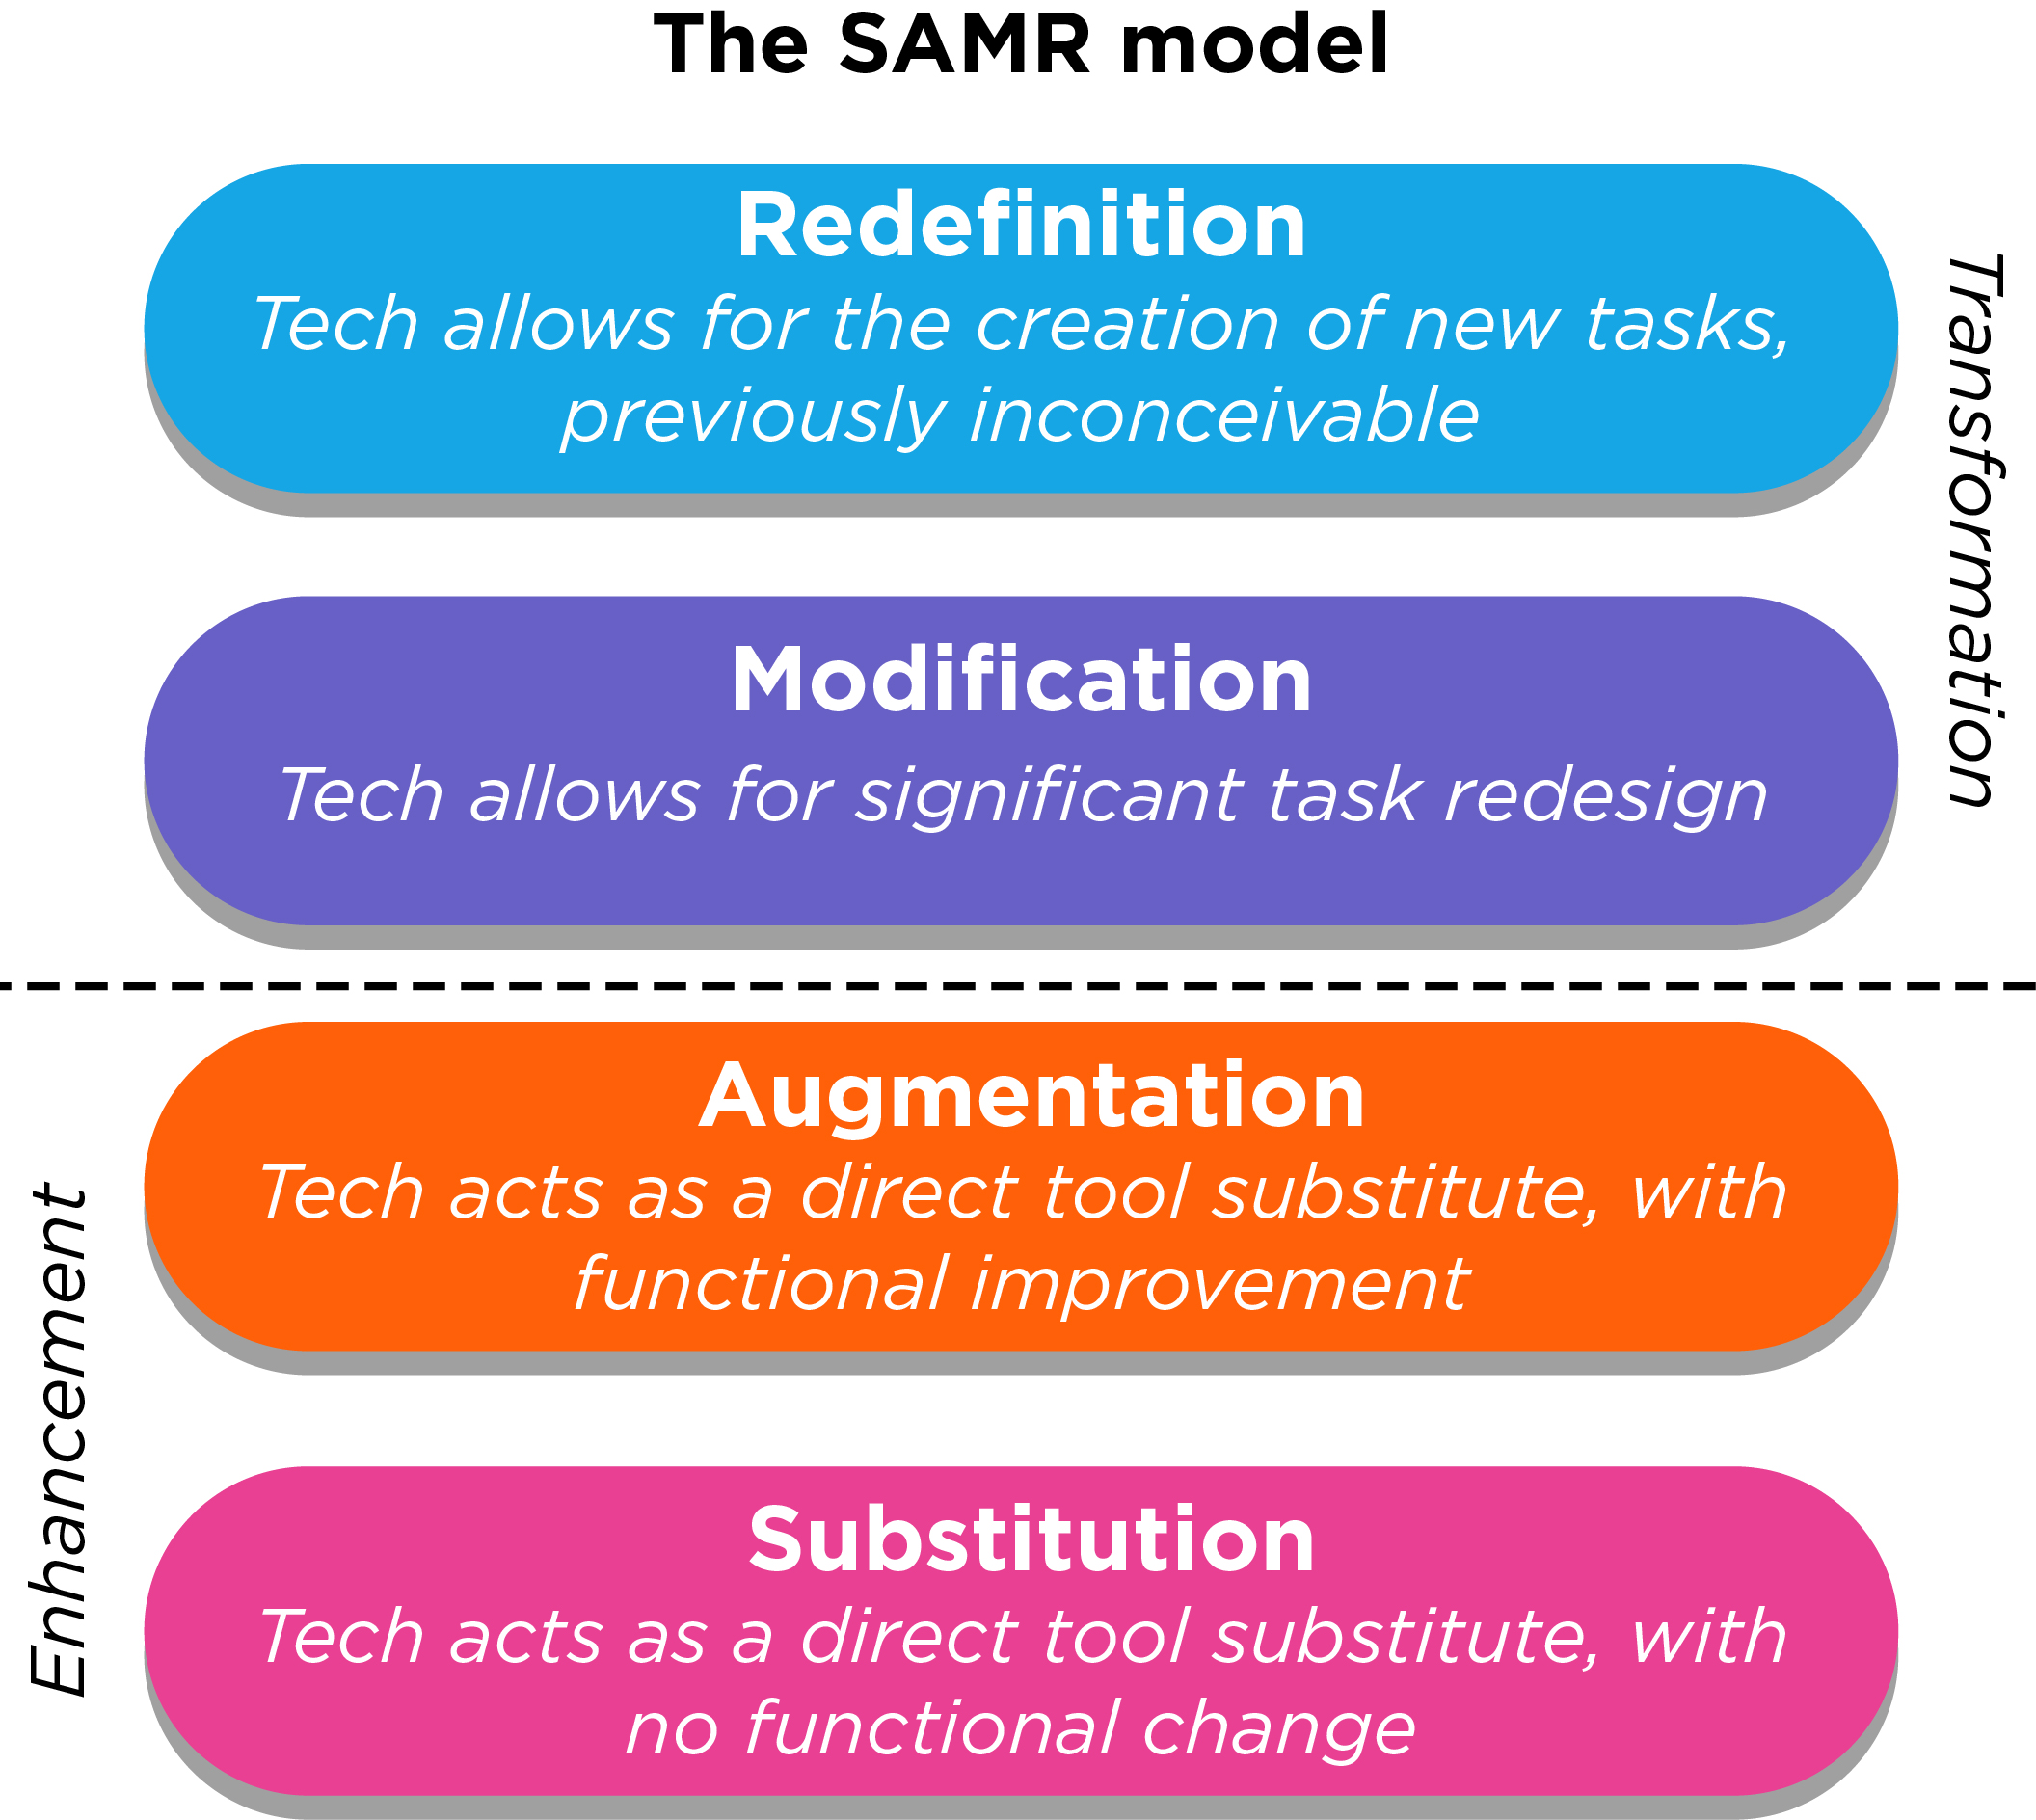 The SAMR model